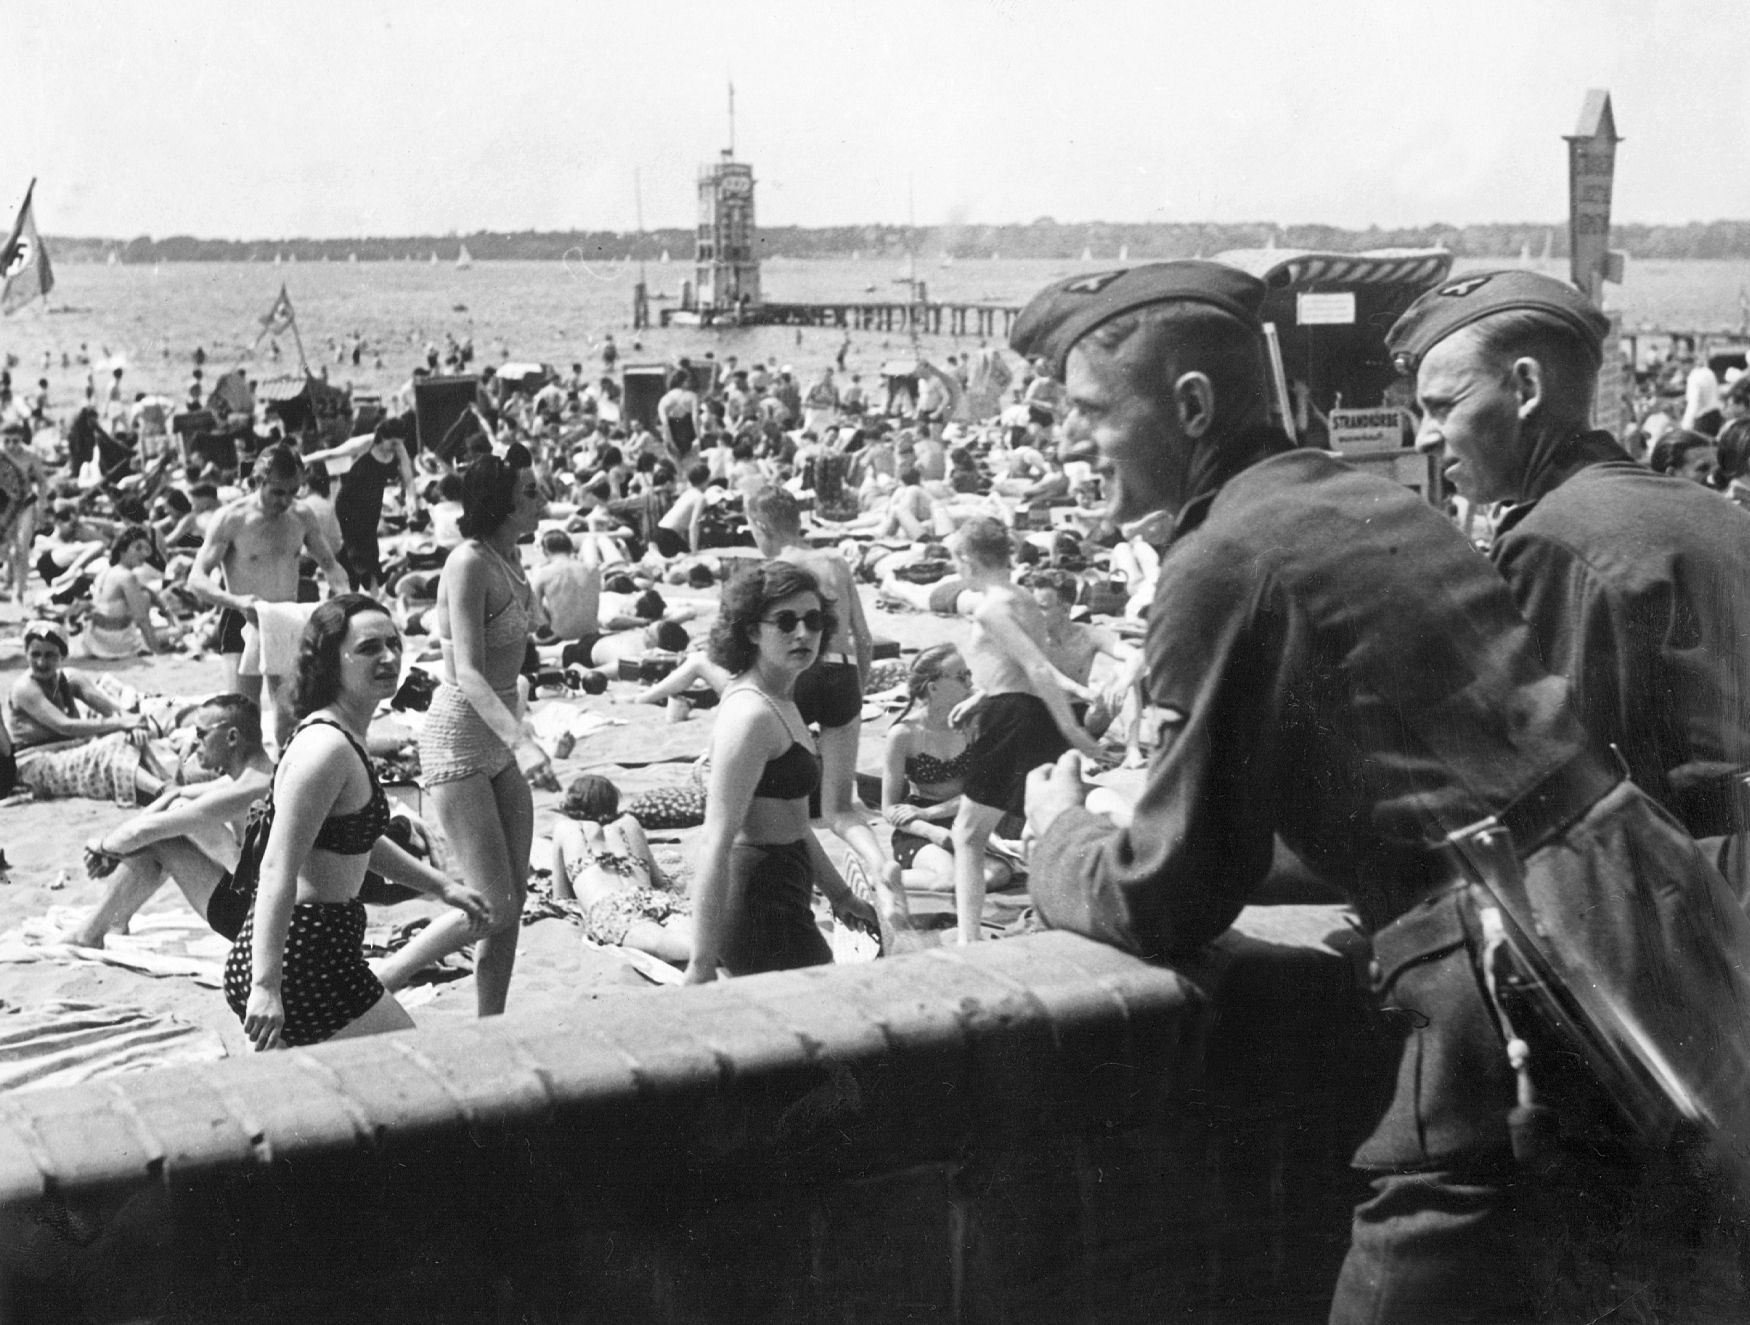 Wannsee vojáci SS na pláži Berlín nacismus třetí říše 1940